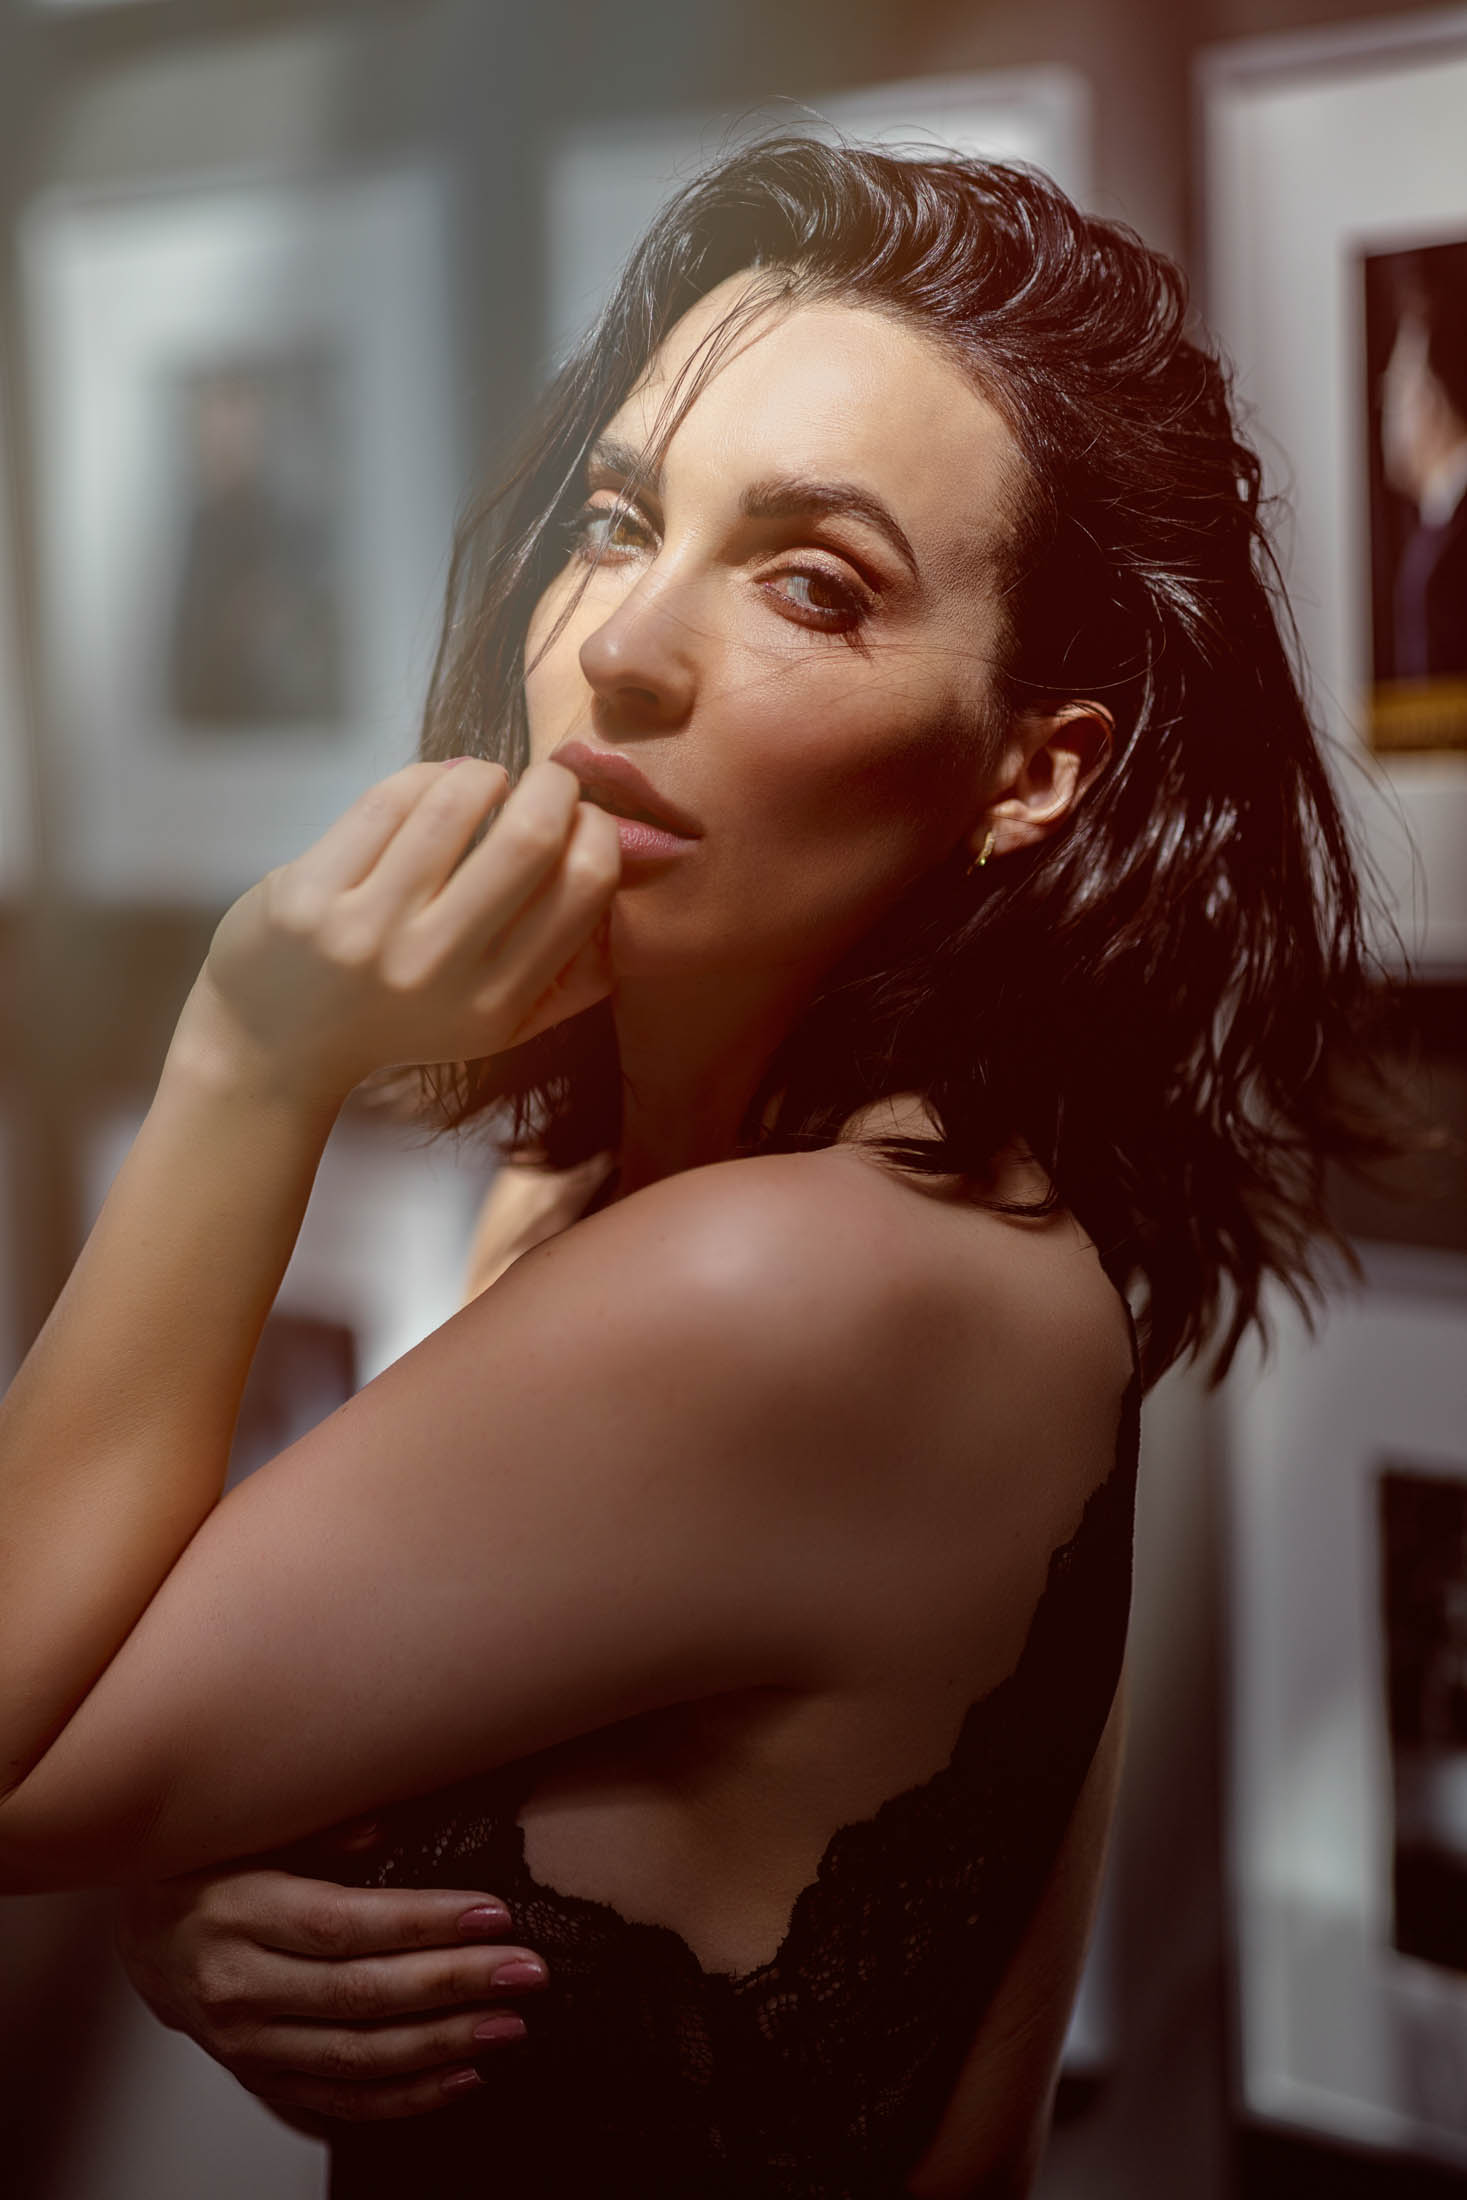 Eine brünette Frau mit elegantem Make-up und einem schwarzen Spitzentop blickt nachdenklich nach oben und stützt ihr Kinn in einer warm beleuchteten künstlerischen Umgebung auf ihre Finger. © Fotografie Tomas Rodriguez